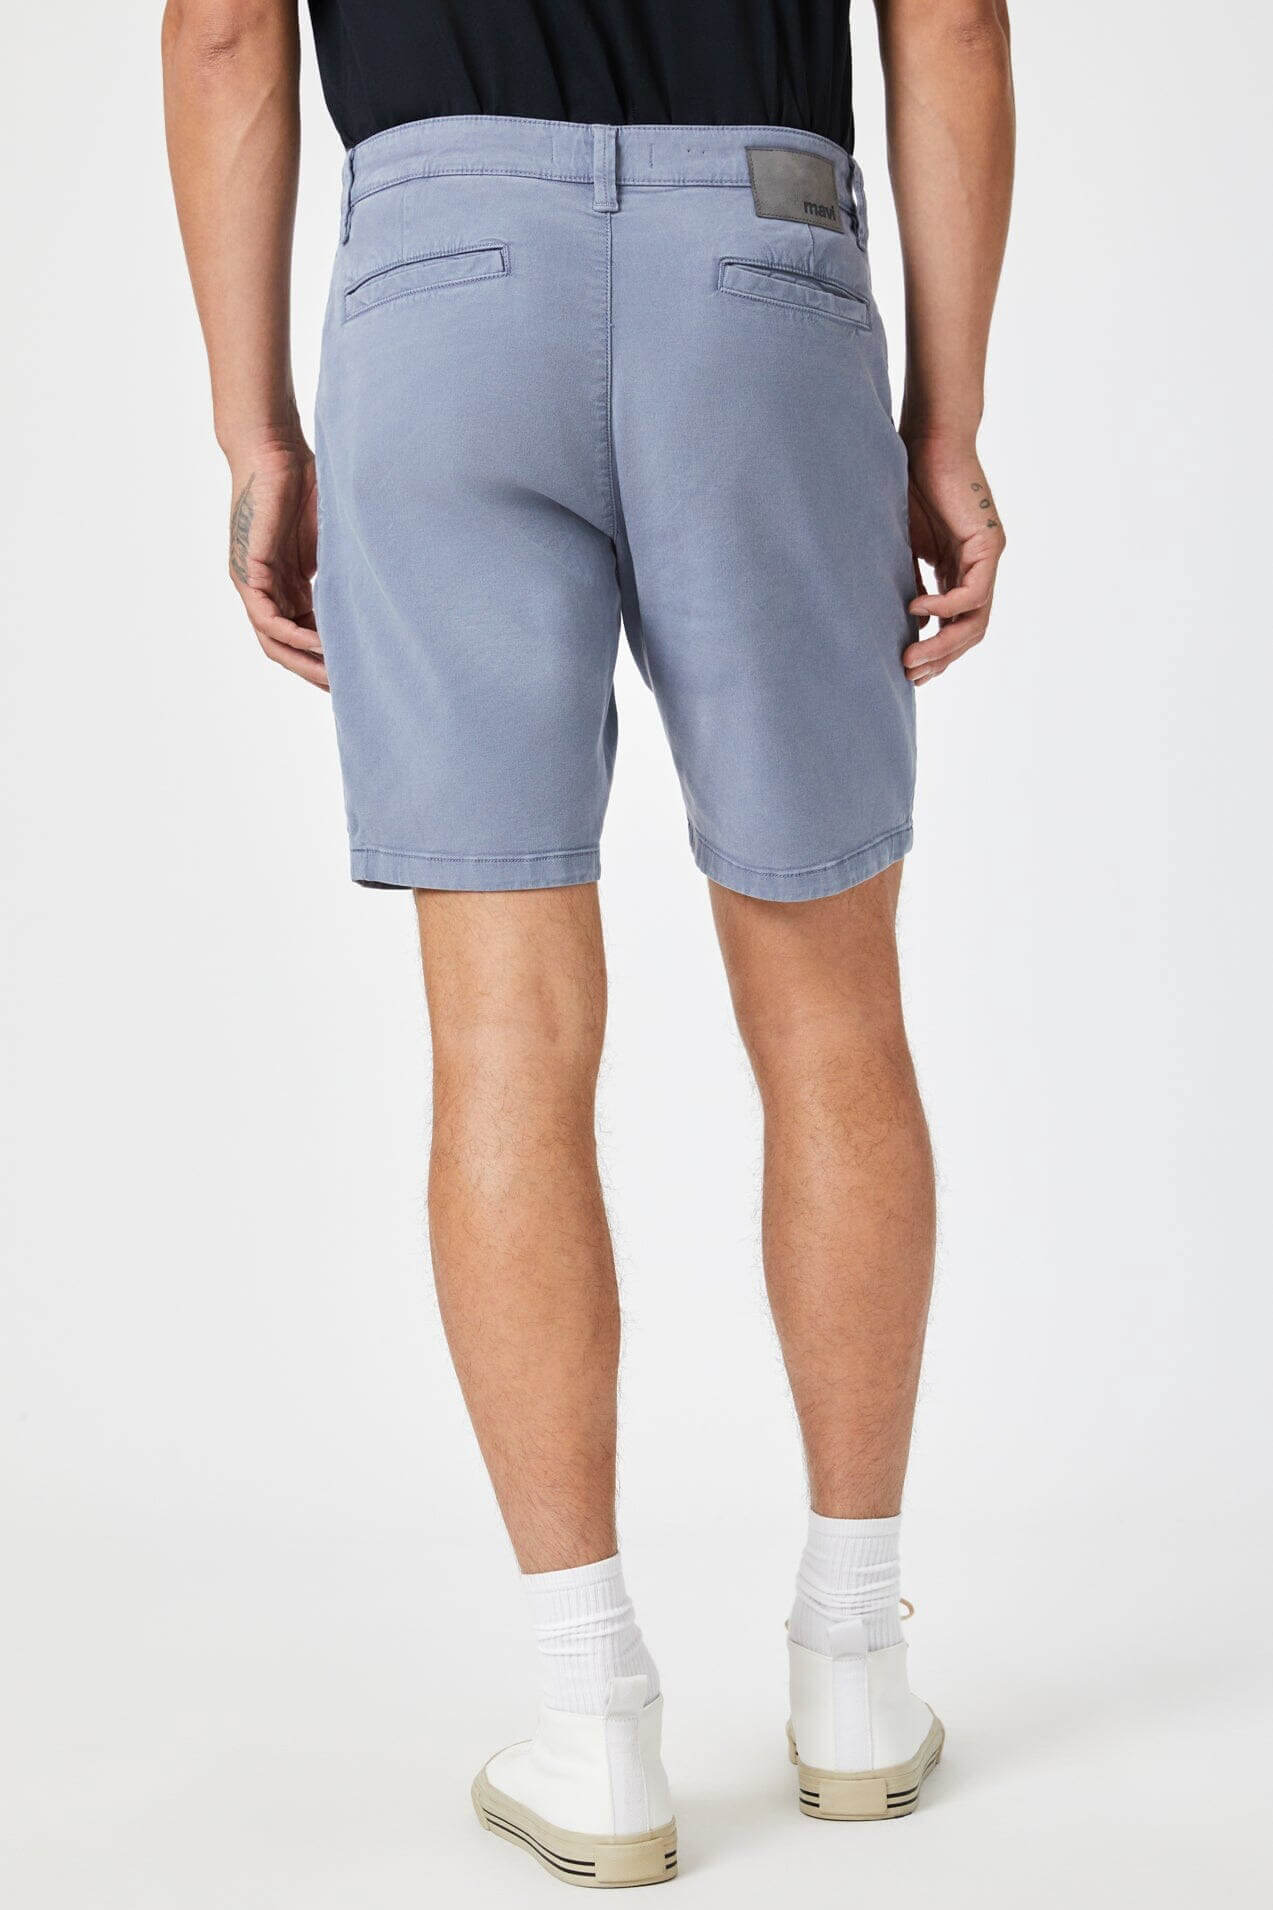 Mavi Jeans Noah 9" inseam shorts in flint stone luxe twill